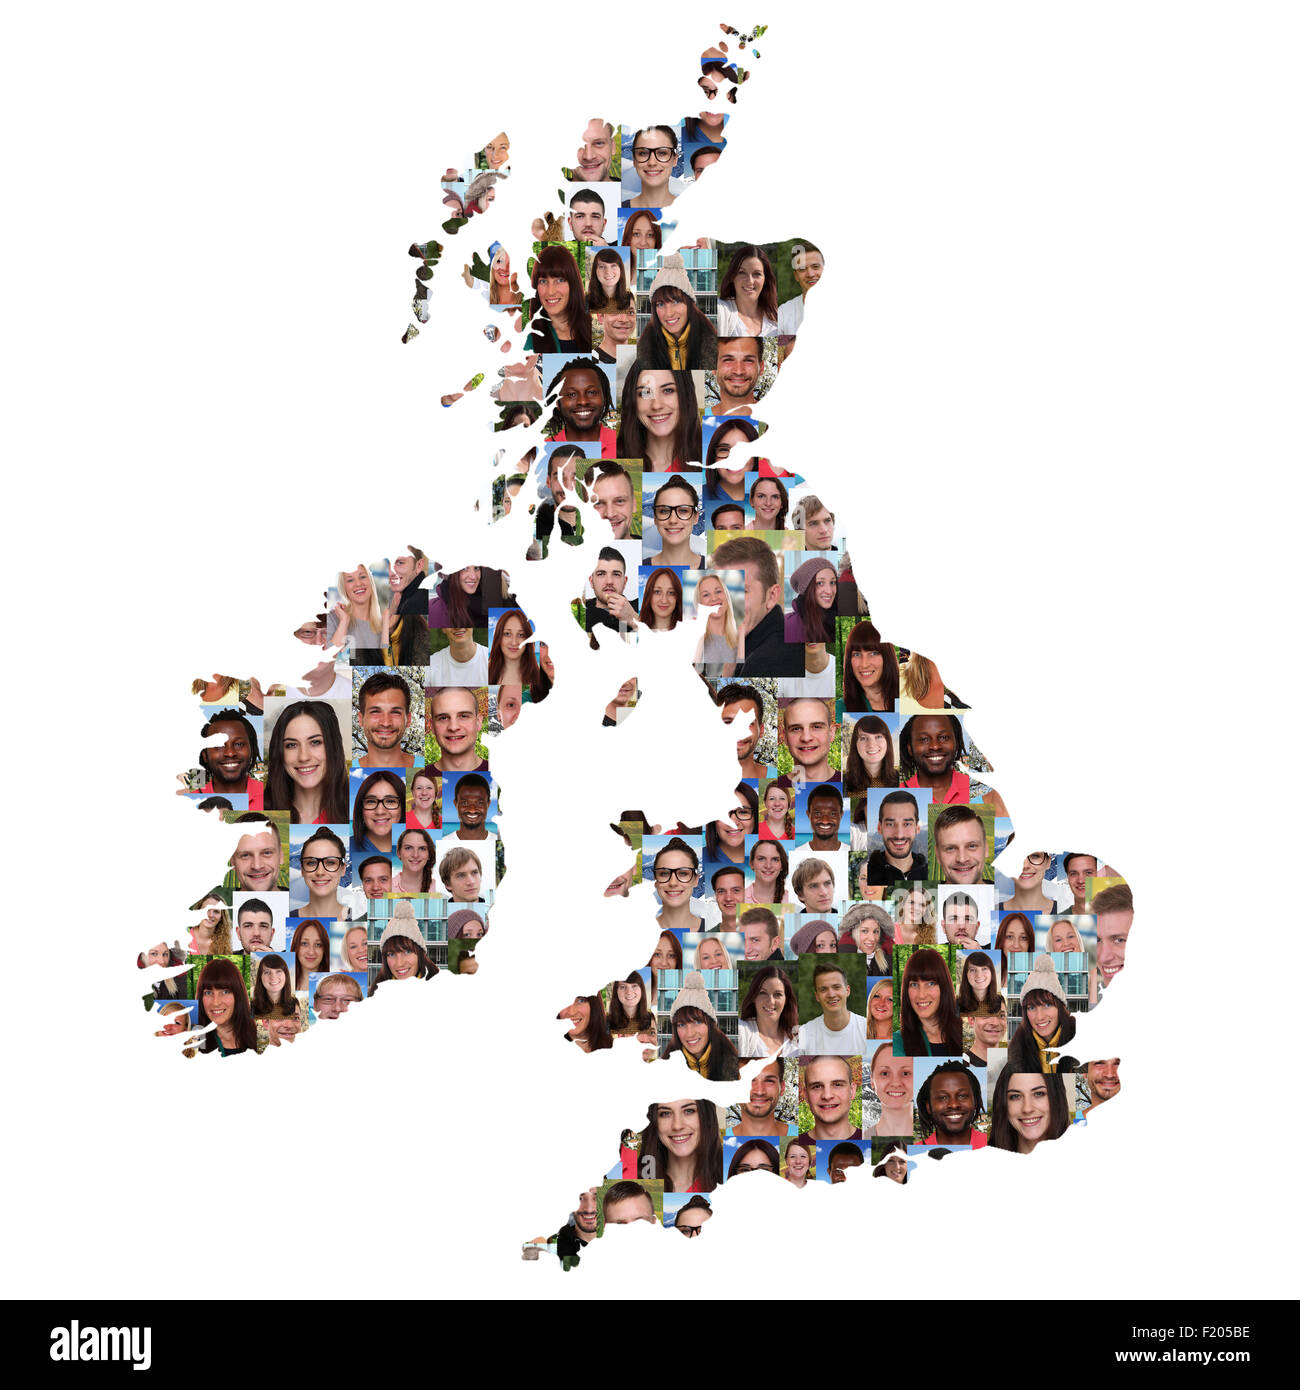 Gran Bretaña e Irlanda mapa grupo multicultural de jóvenes aislados de diversidad de integración Foto de stock